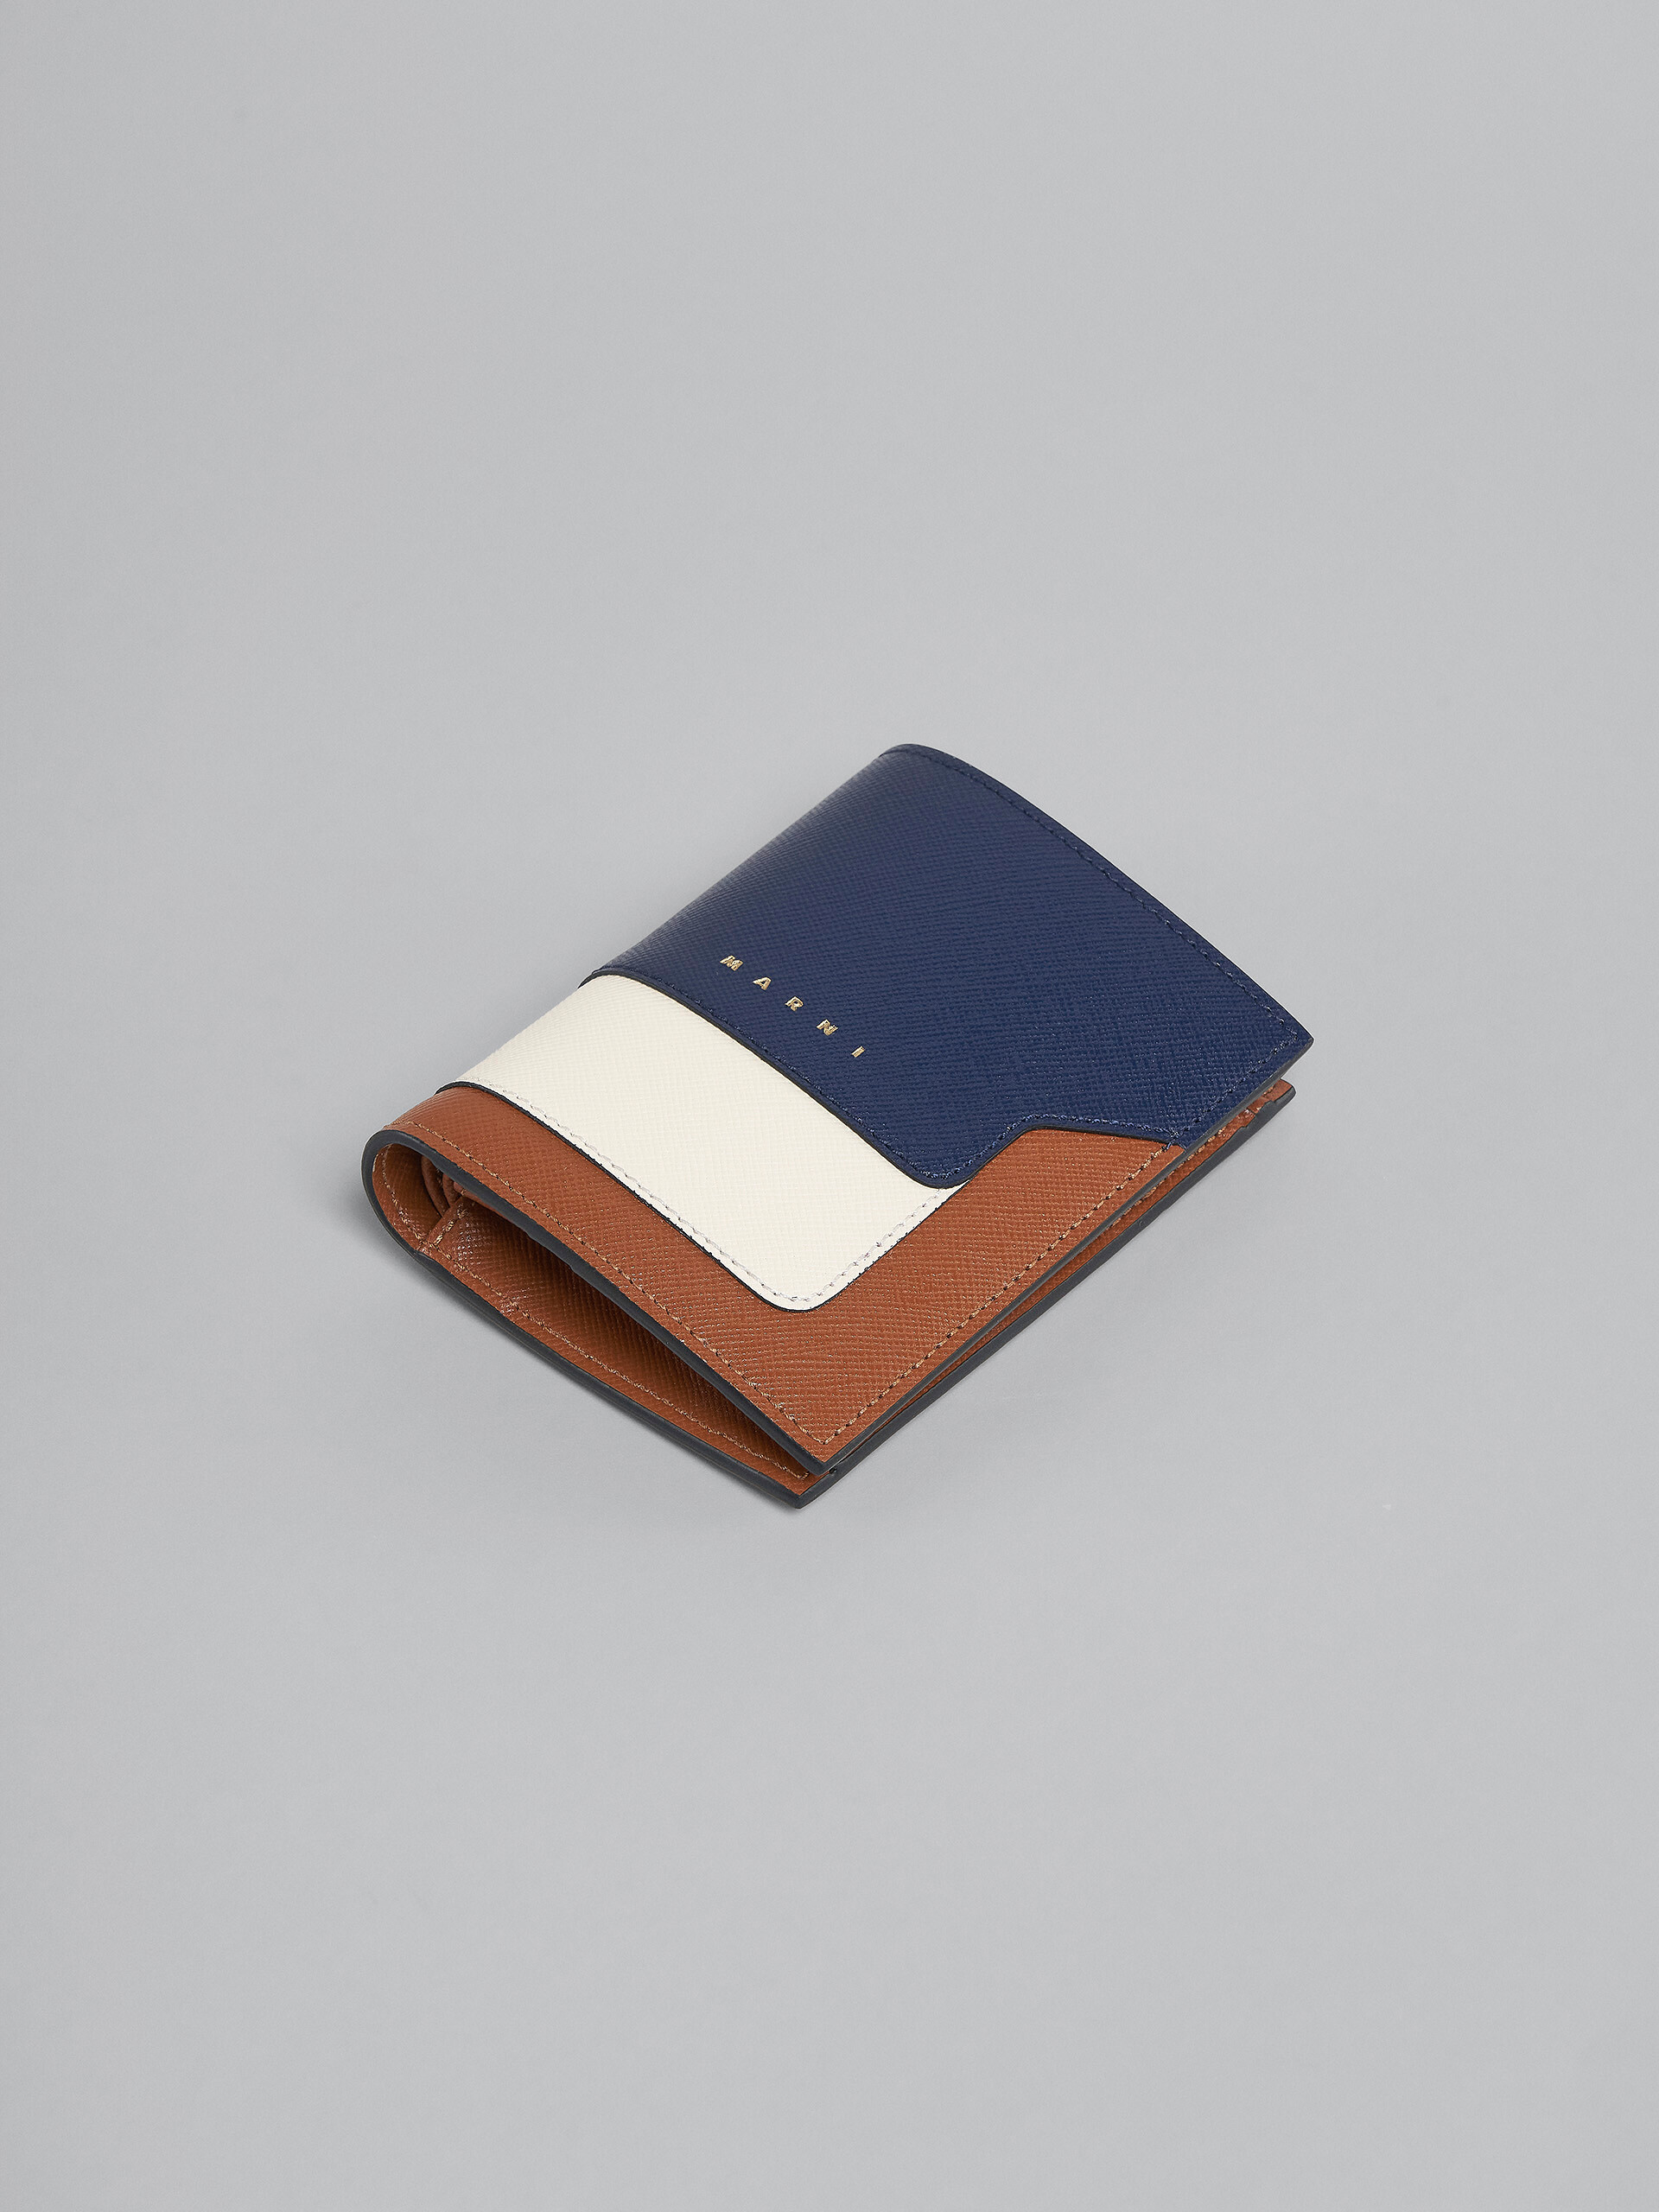 ブルー、ホワイト、ブラウン サフィアーノレザー製二つ折りウォレット - 財布 - Image 5